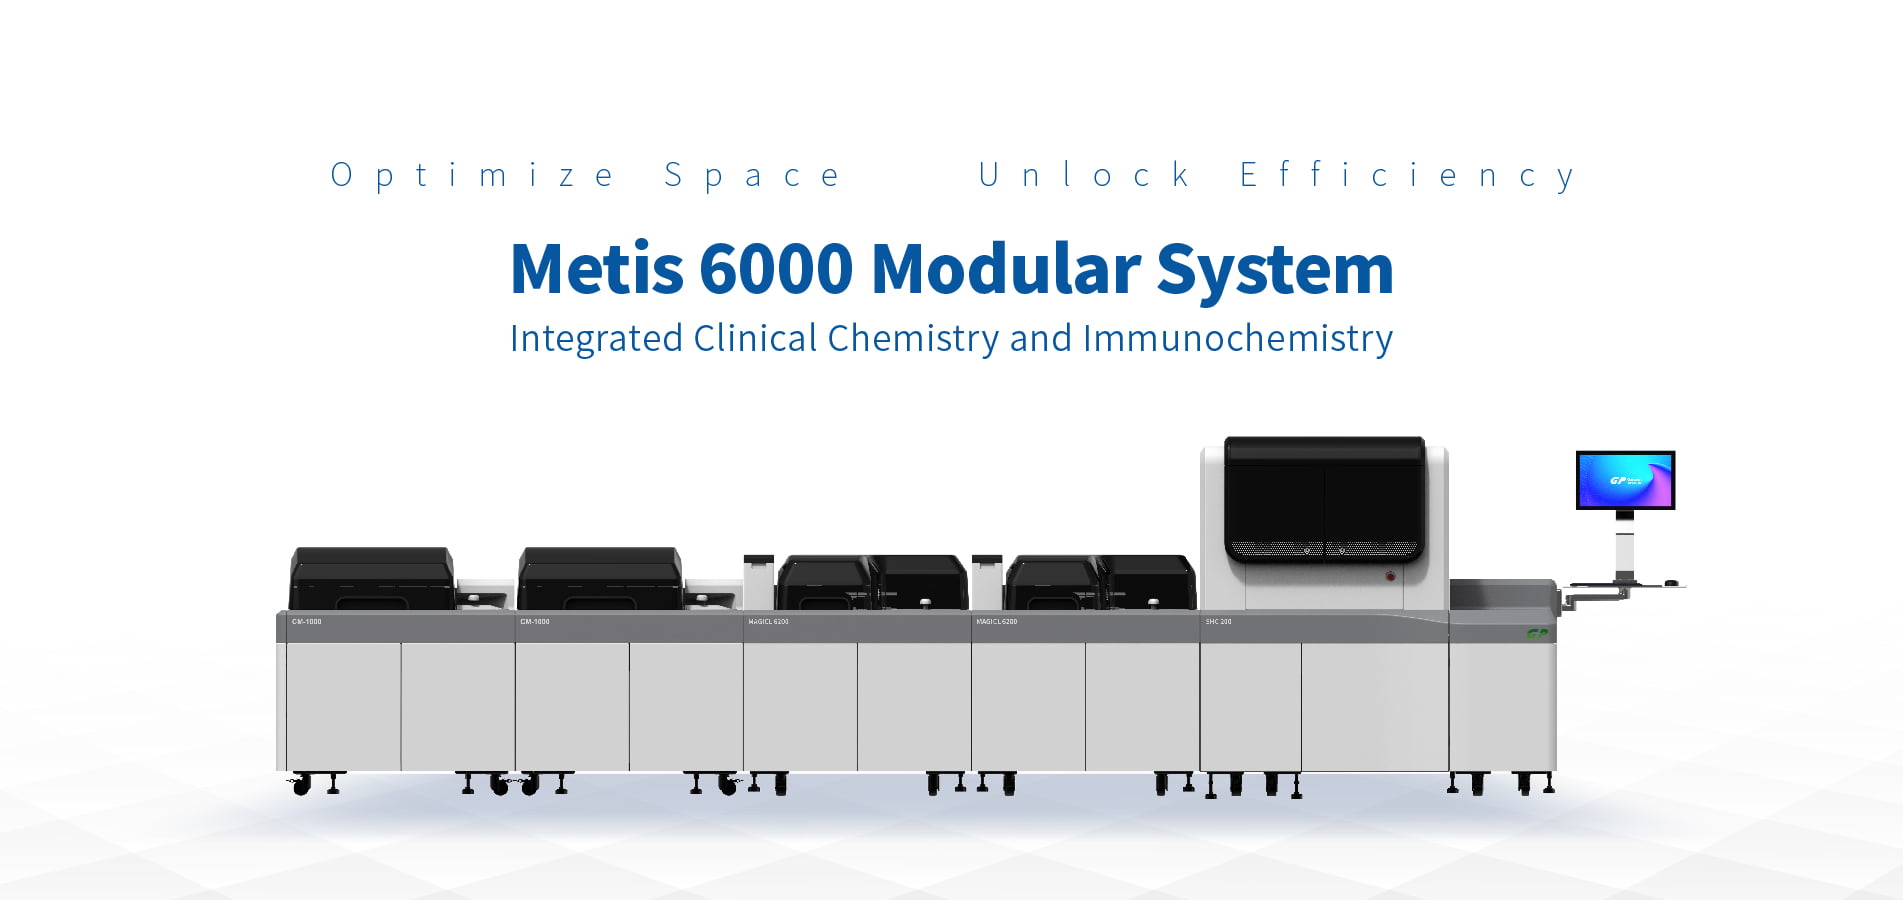 Tornando o sistema modular acessível a mais laboratórios - Metis 6000 atende às suas necessidades